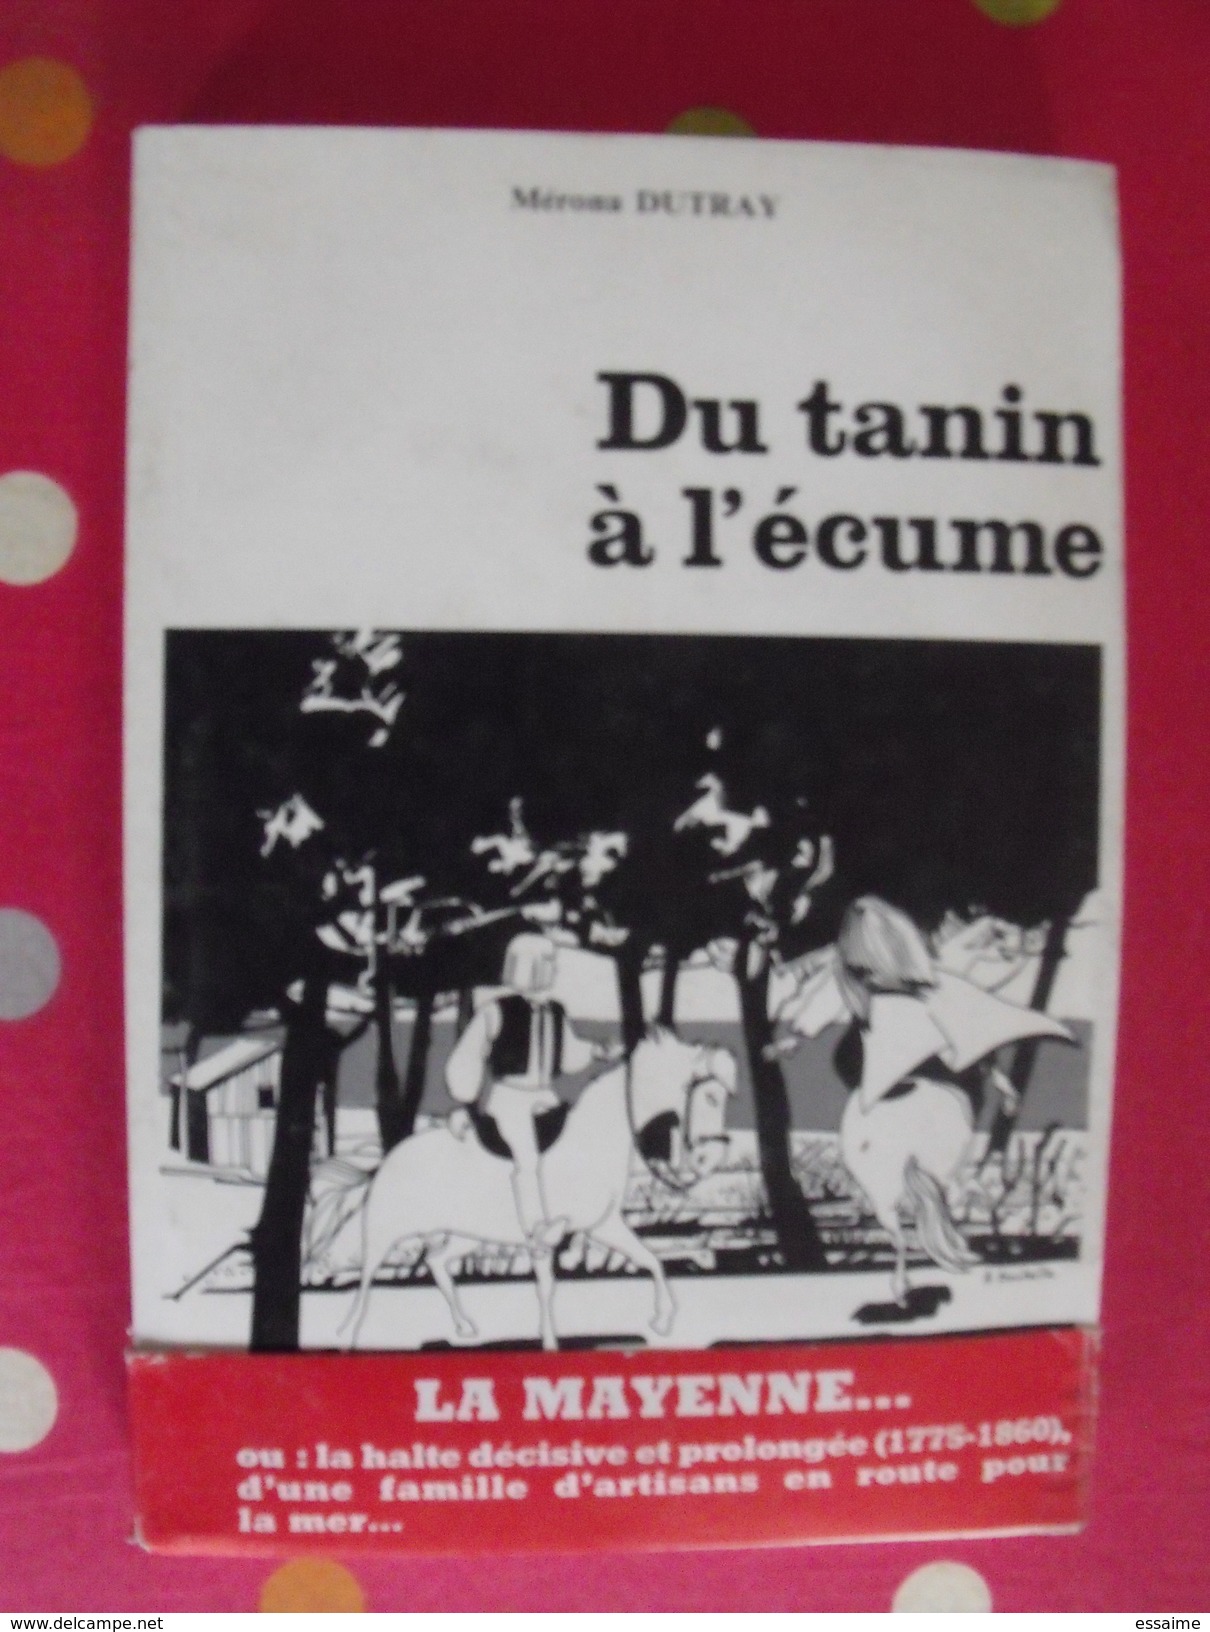 Du Tanin à L'écume... Mérona Dutray. éditions Le Clairmirouère Du Temps, Blois 1984 - Pays De Loire